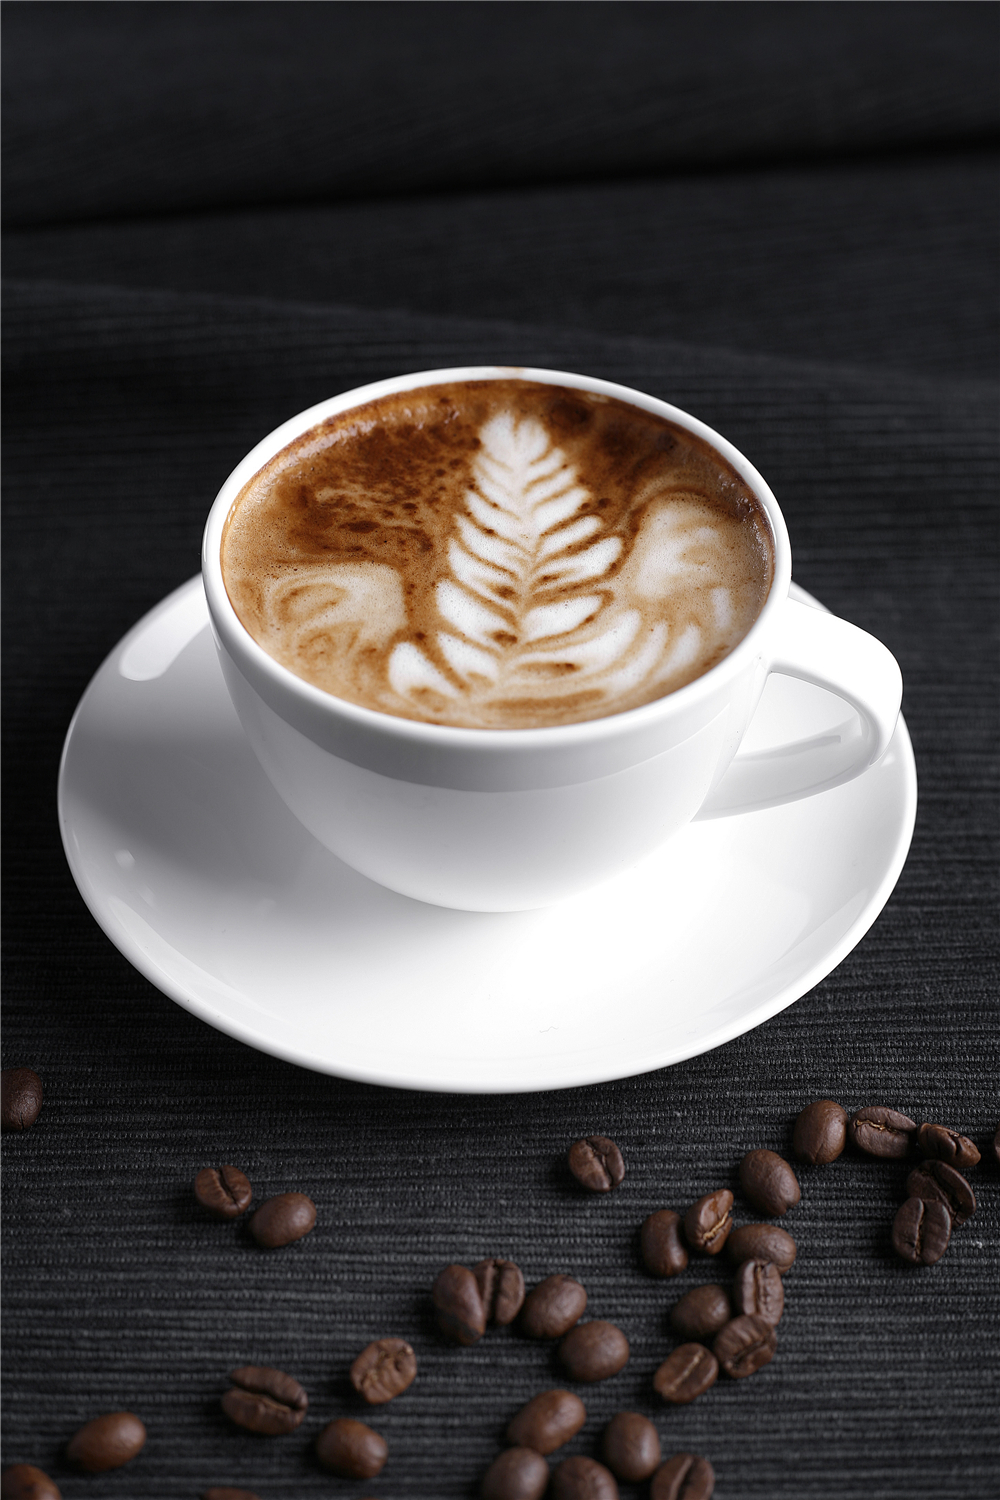 雀多米体育巢咖啡年度六大新品齐亮相